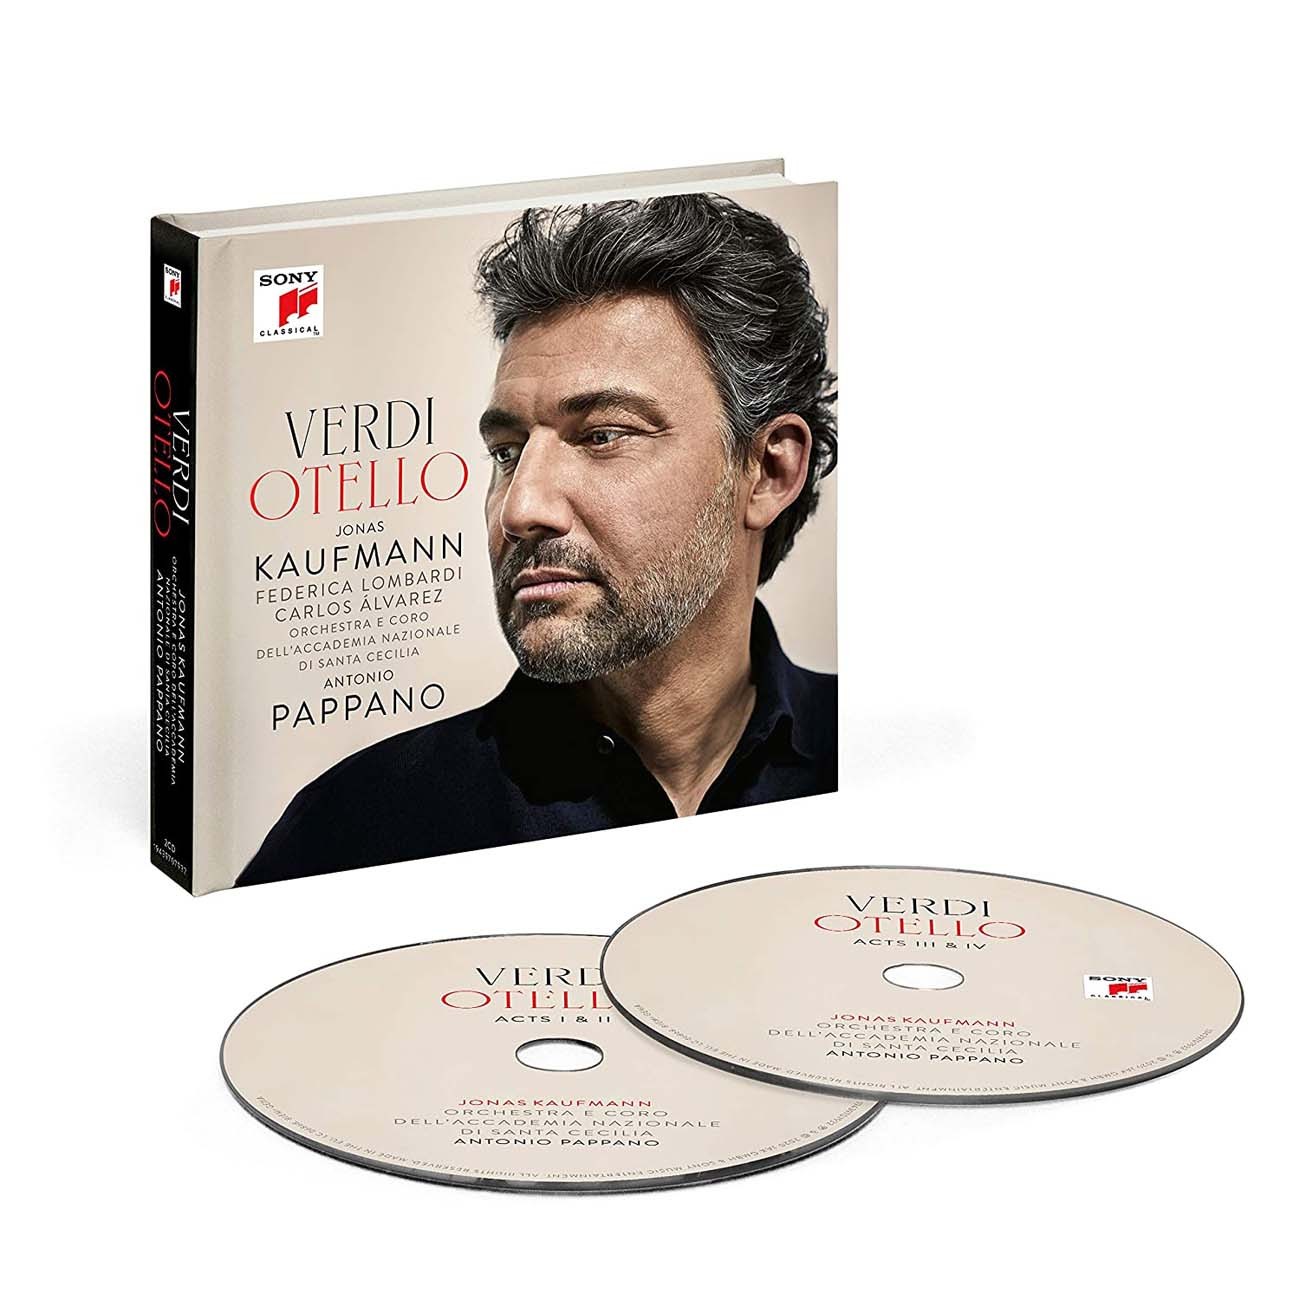 Verdi: Otello (2-CD) – Jonas Kaufmann | CDS | Met Opera Shop